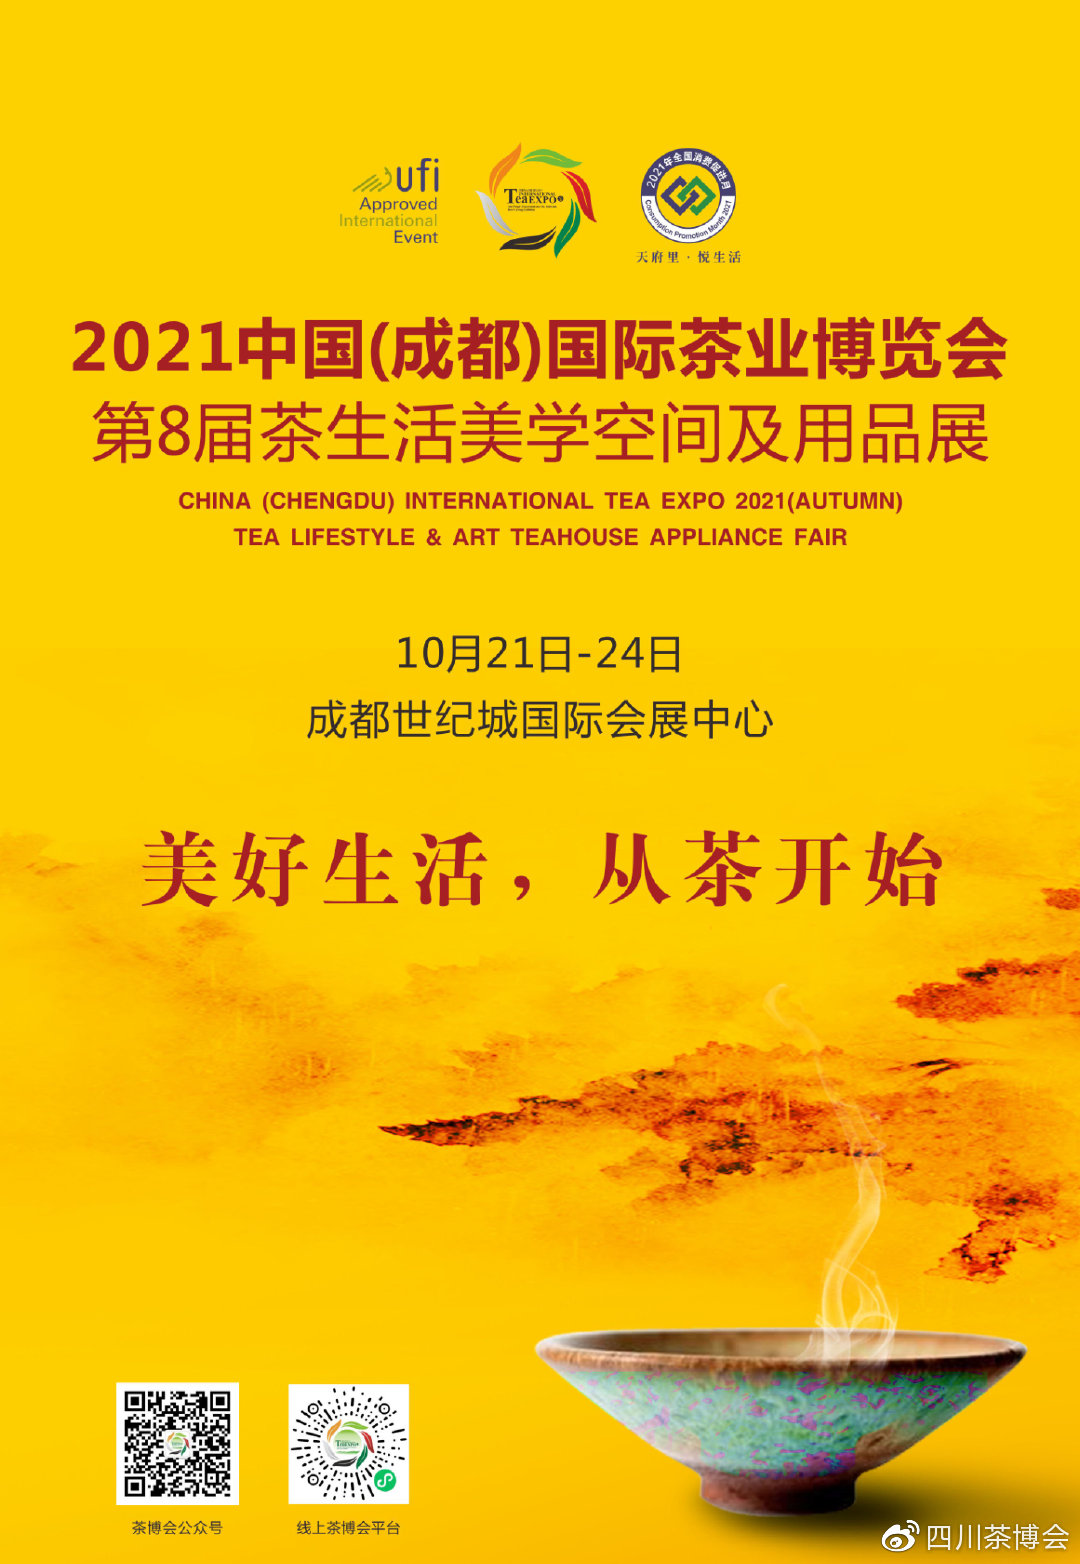 展位平面图-茶博会|北京茶博会|2021茶博会|茶博会时间|茶展_北京国际茶业及茶艺博览会官网